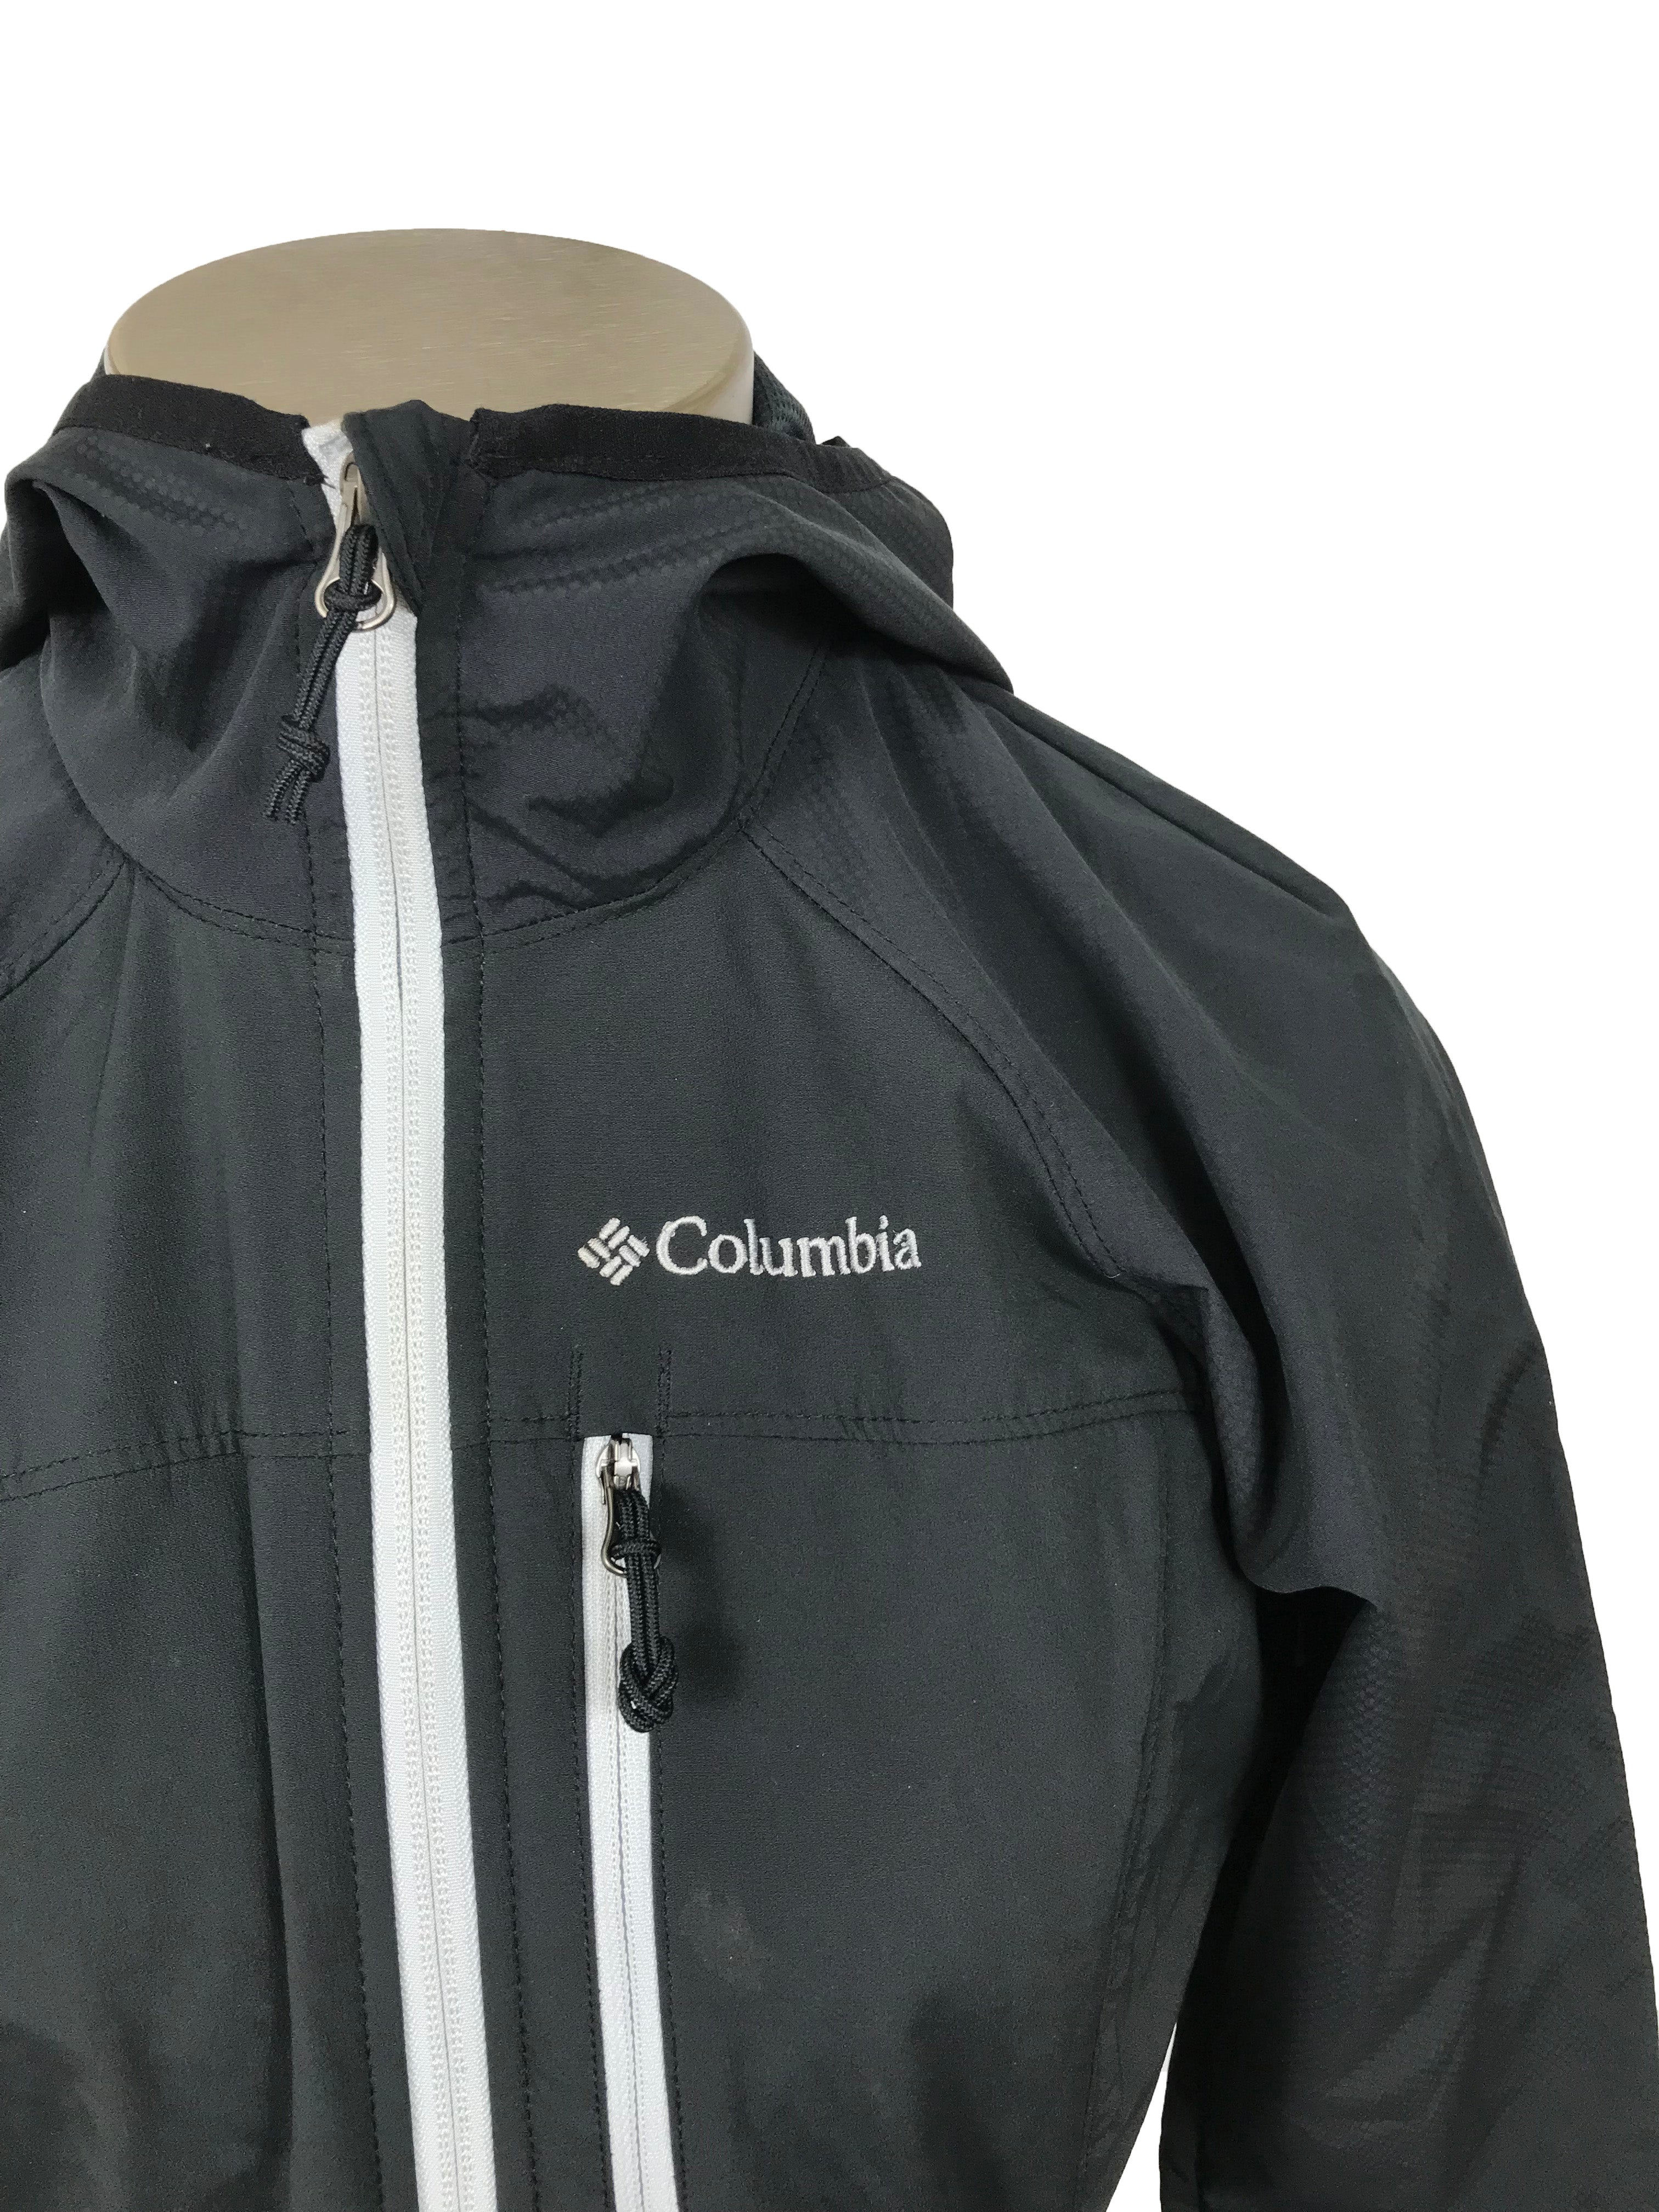 Columbia Black Windbreaker Jacket Women's Size S